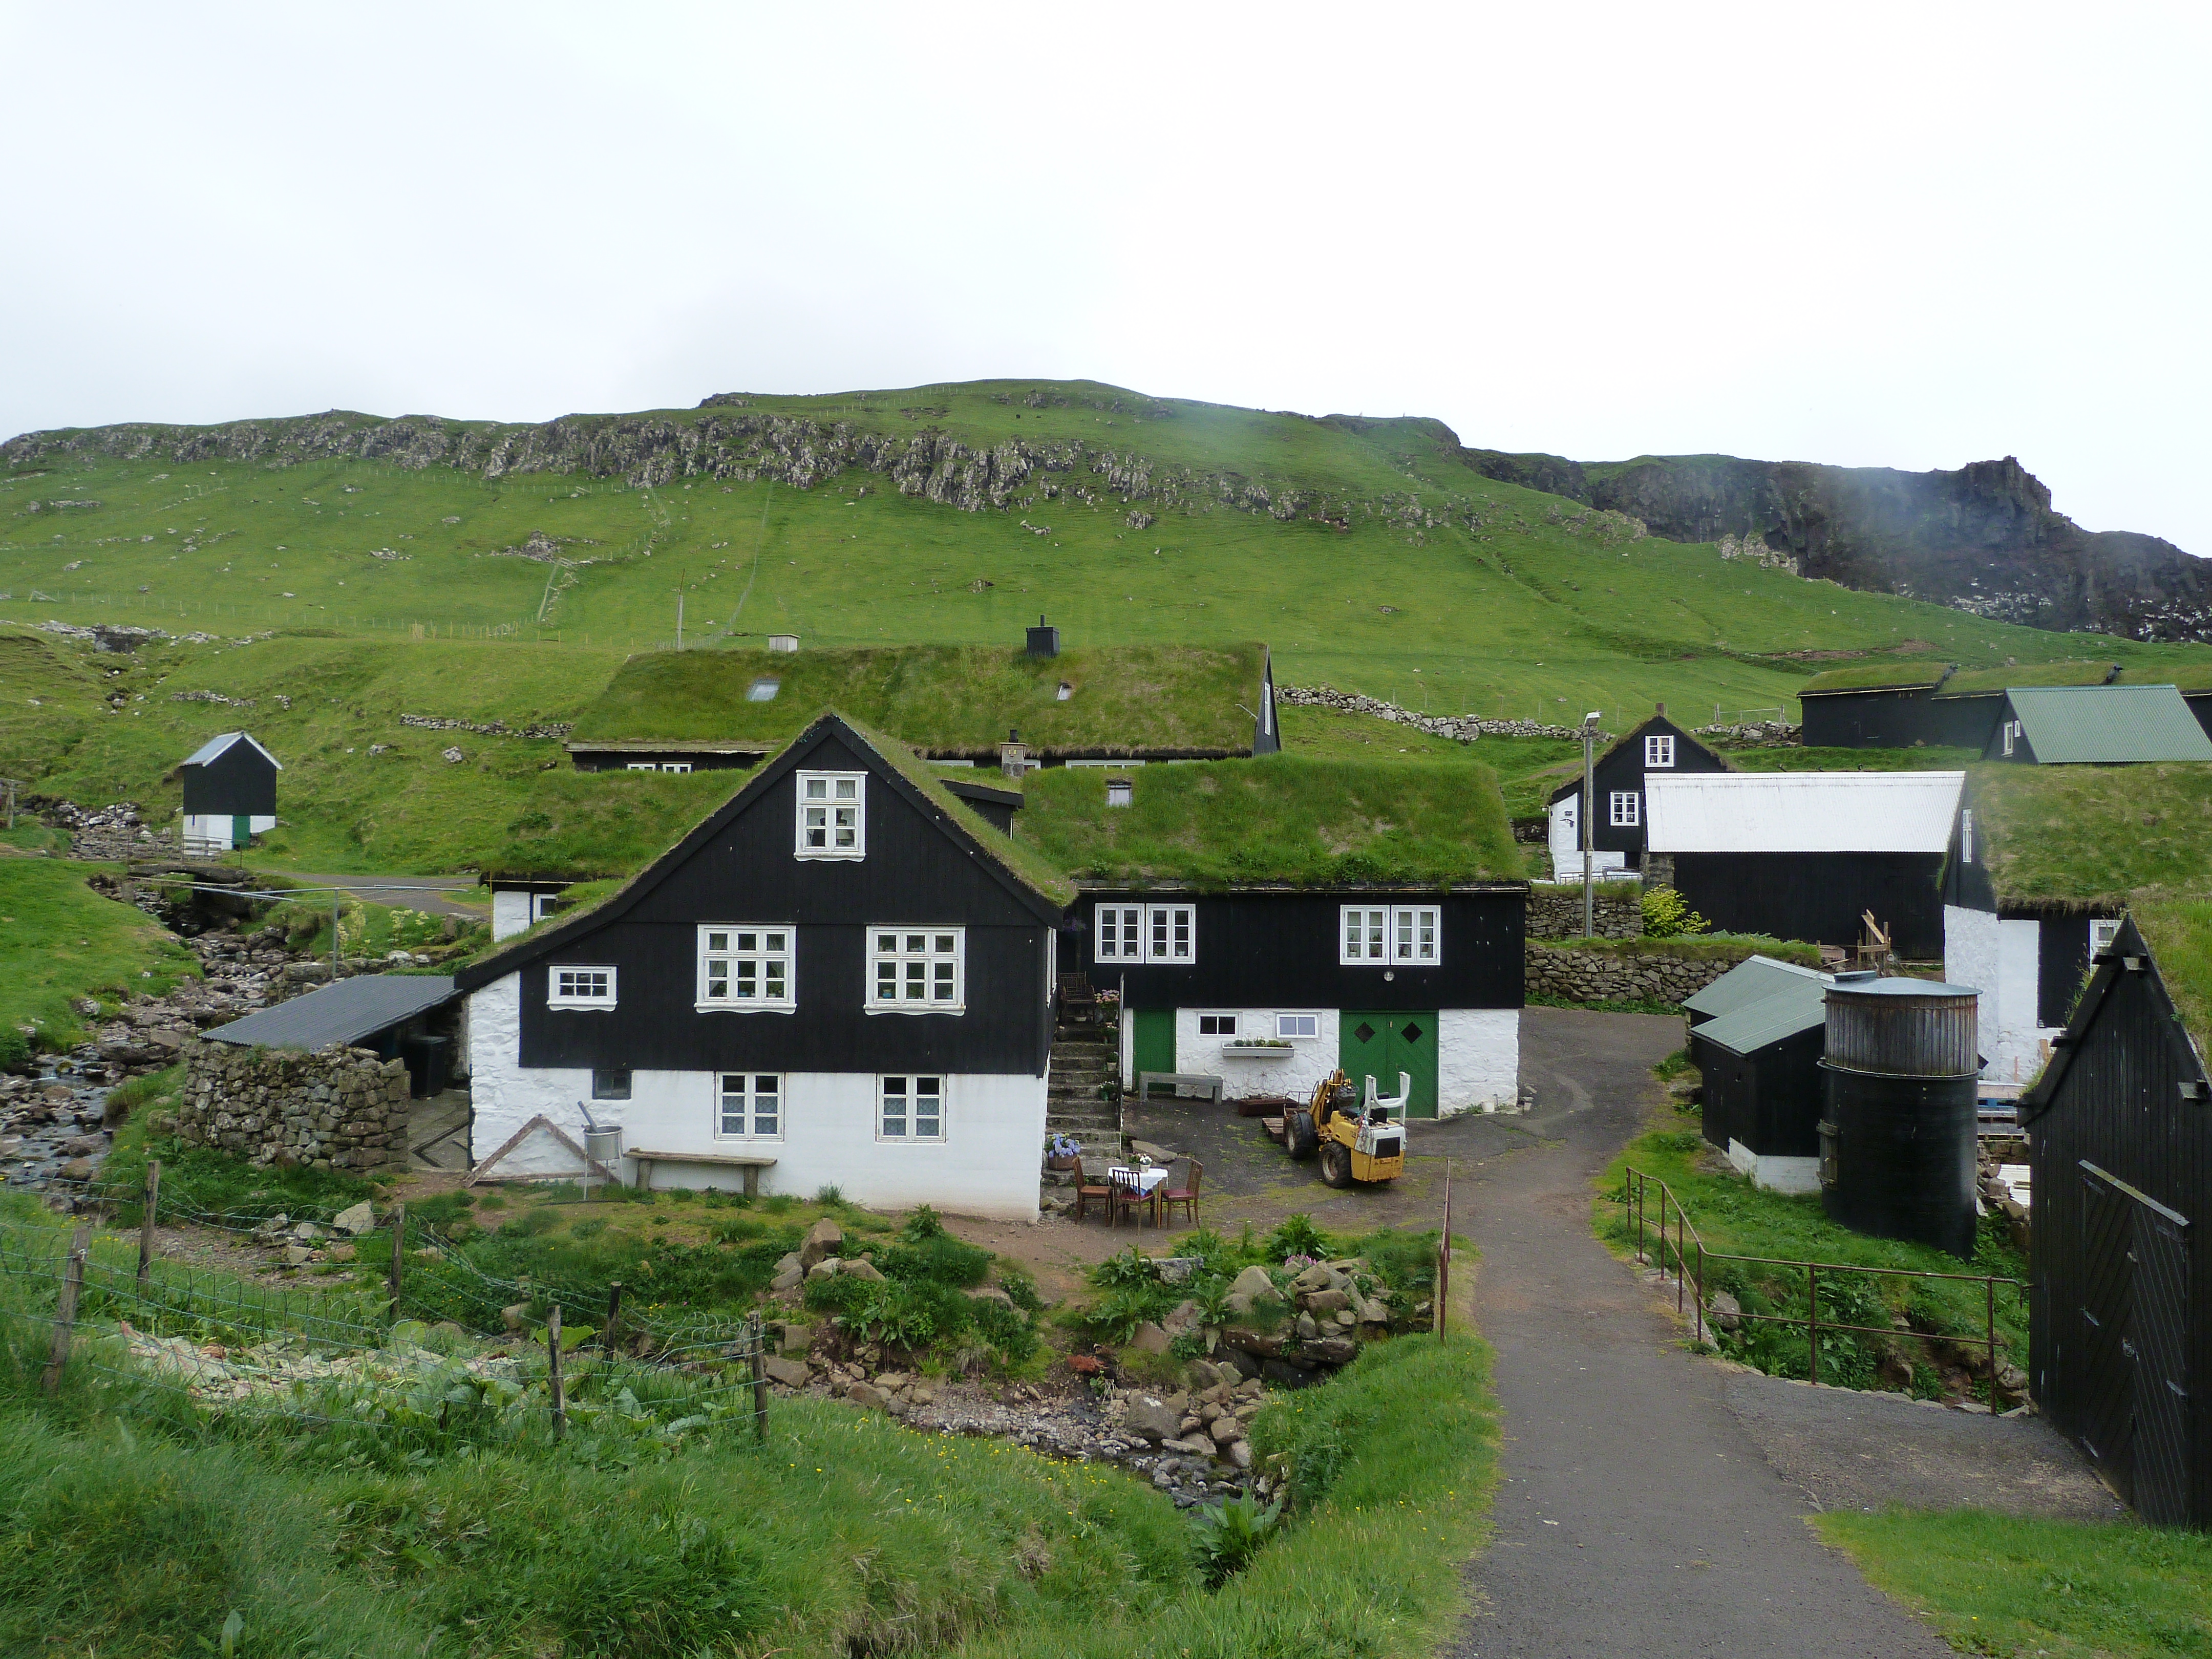 Diario de Viaje Islas Feroe - El Reino de Thor - Blogs of Denmark - DIA 2 - Mykines, el hogar de los frailecillos (3)